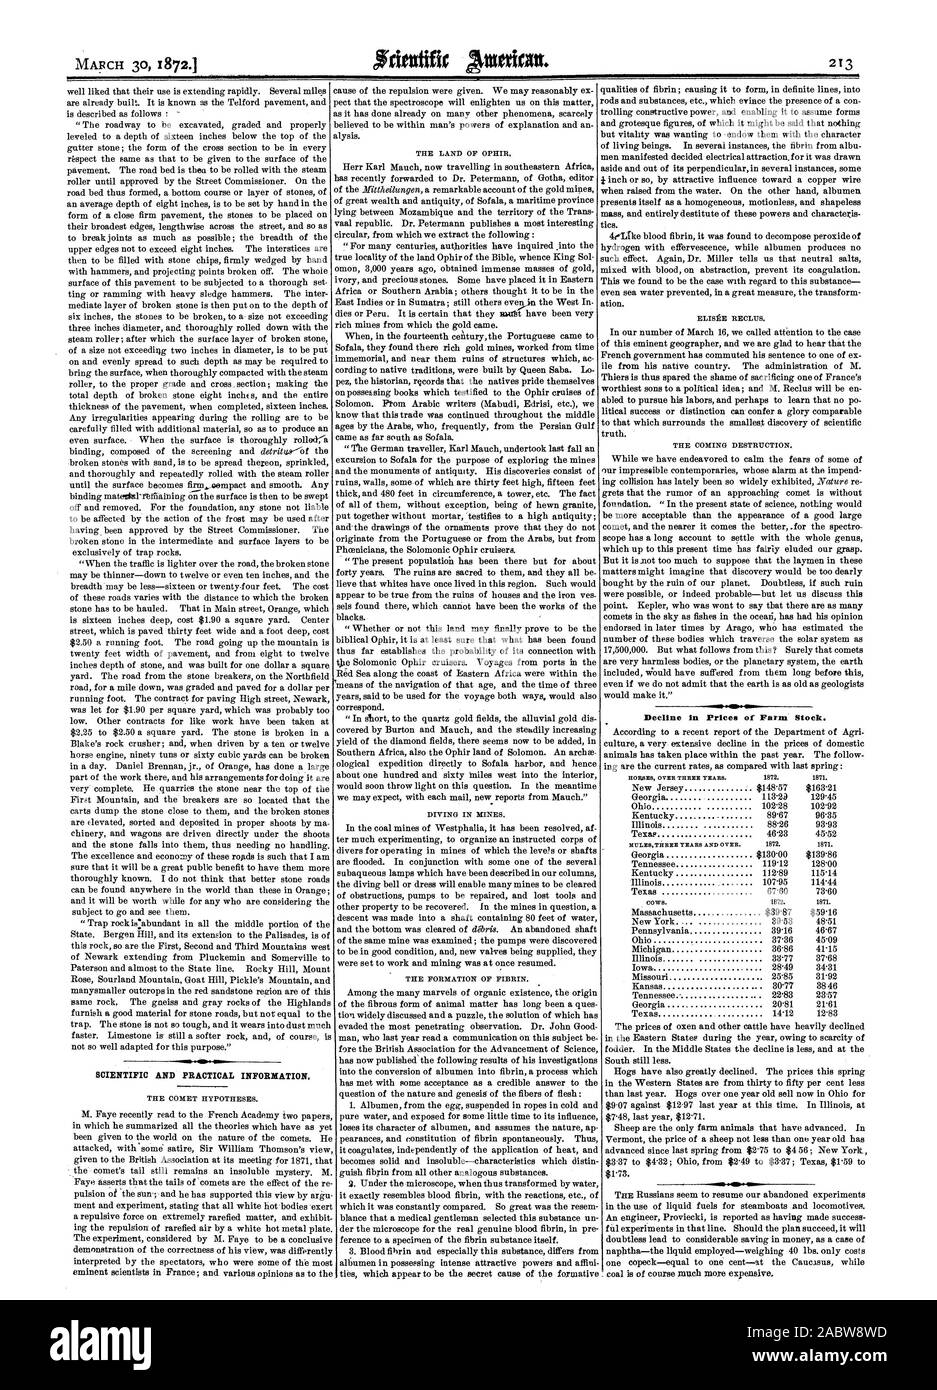 Wissenschaftliche und praktische Informationen. Rückgang der Preise der Bauernhof lieferbar., Scientific American, 1872-03-30 Stockfoto